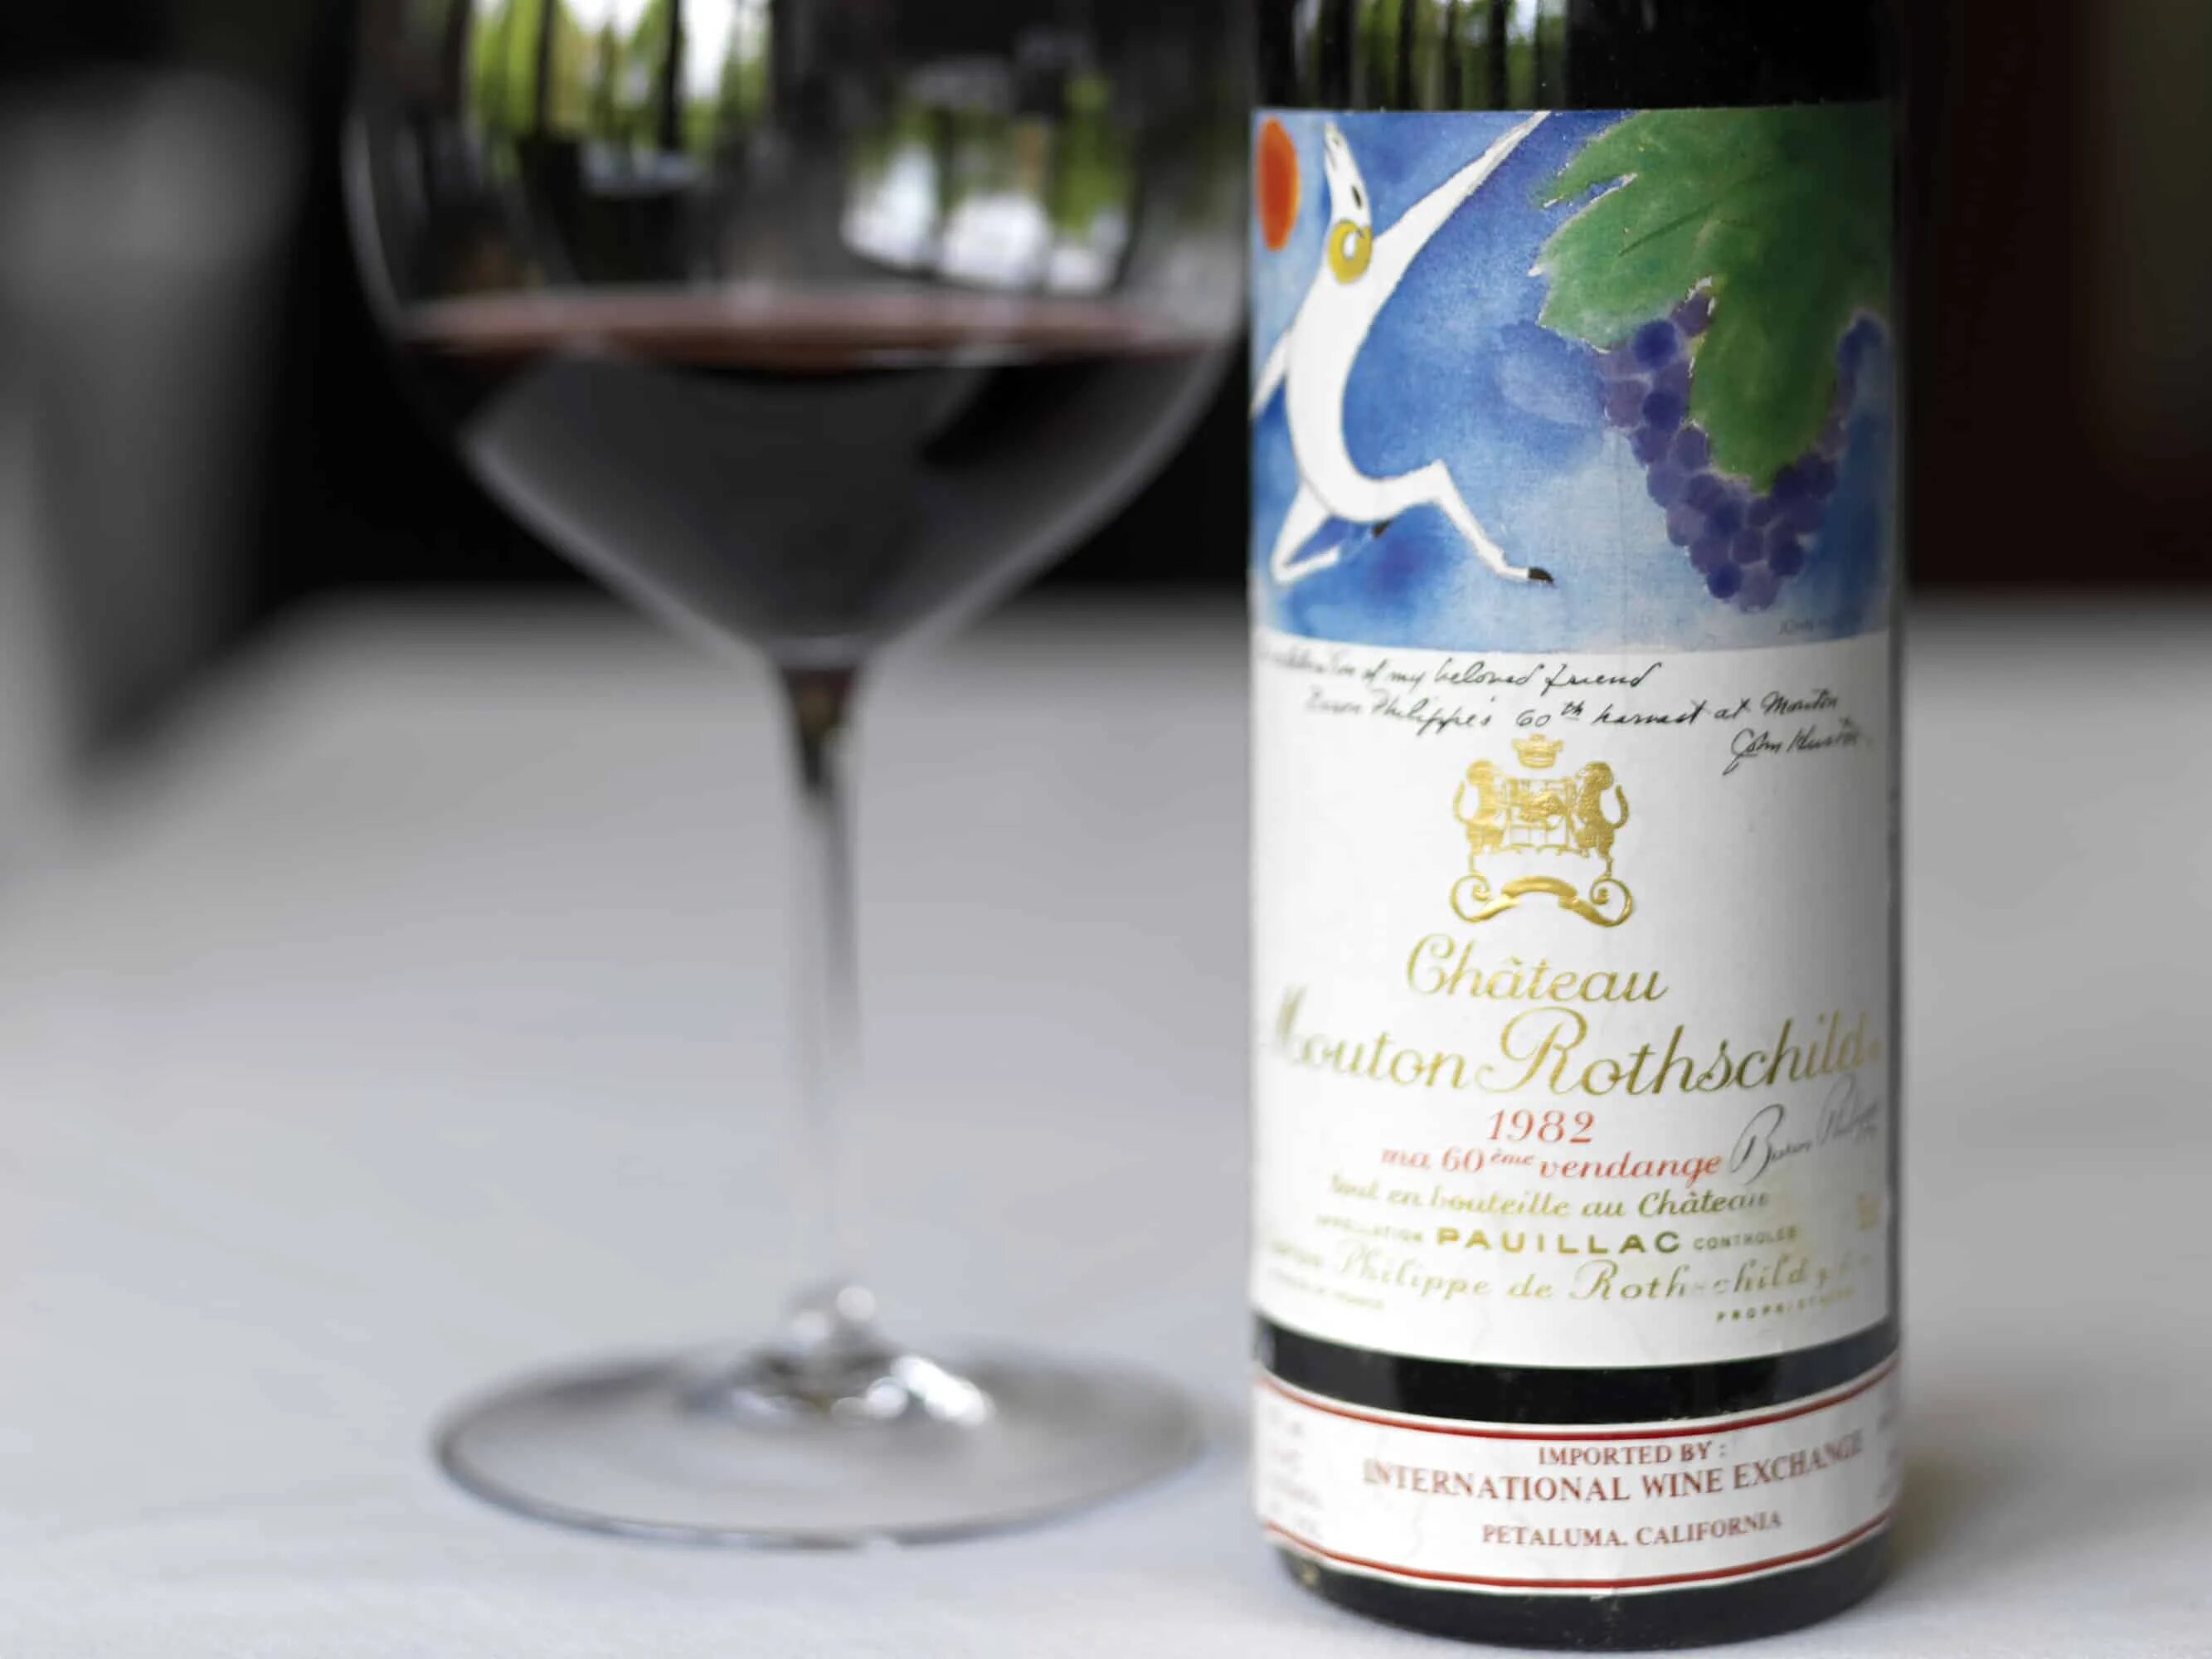 Мир вину. Шато мутон Ротшильд. Мутон Ротшильд вино. Вино Chateau Mouton Rothschild. Mouton Rothschild 1982.